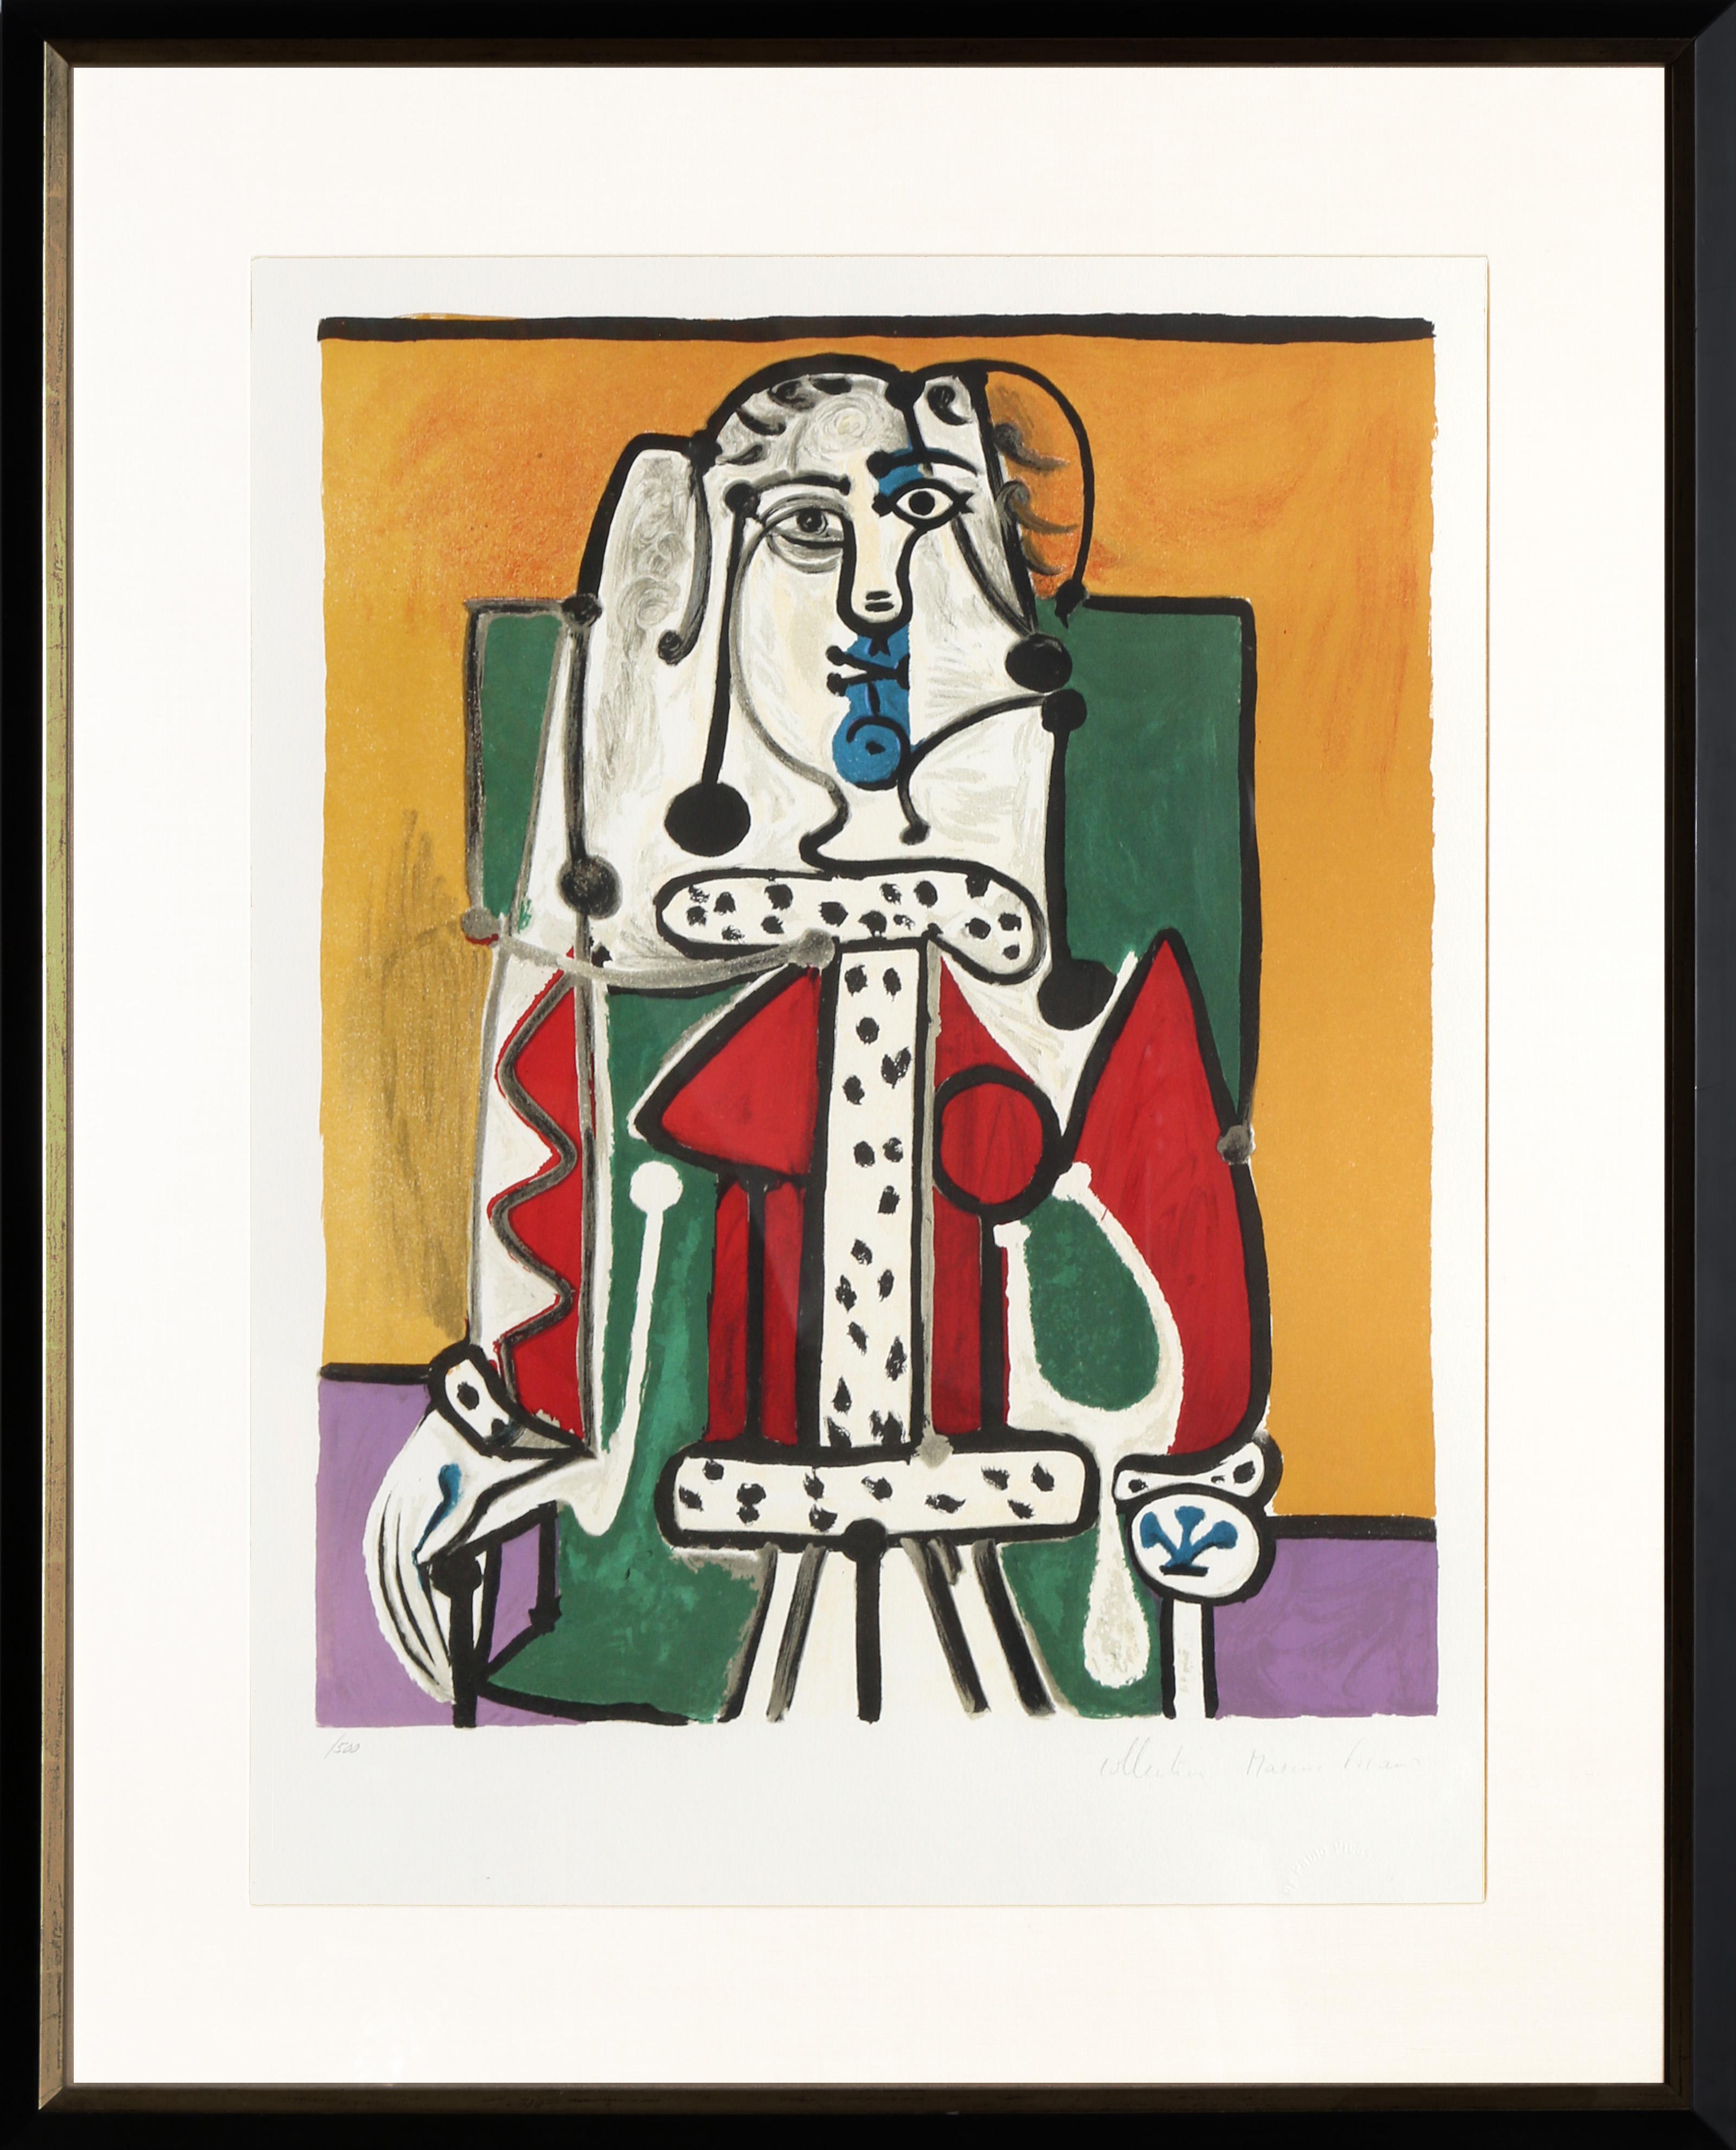 Eine Lithografie aus der Marina Picasso Estate Collection nach dem Gemälde "Femme dans un Fauteuil" von Pablo Picasso, das kürzlich für 10 Millionen USD versteigert wurde. Das Originalgemälde wurde 1948 fertiggestellt. In den 1970er Jahren, nach